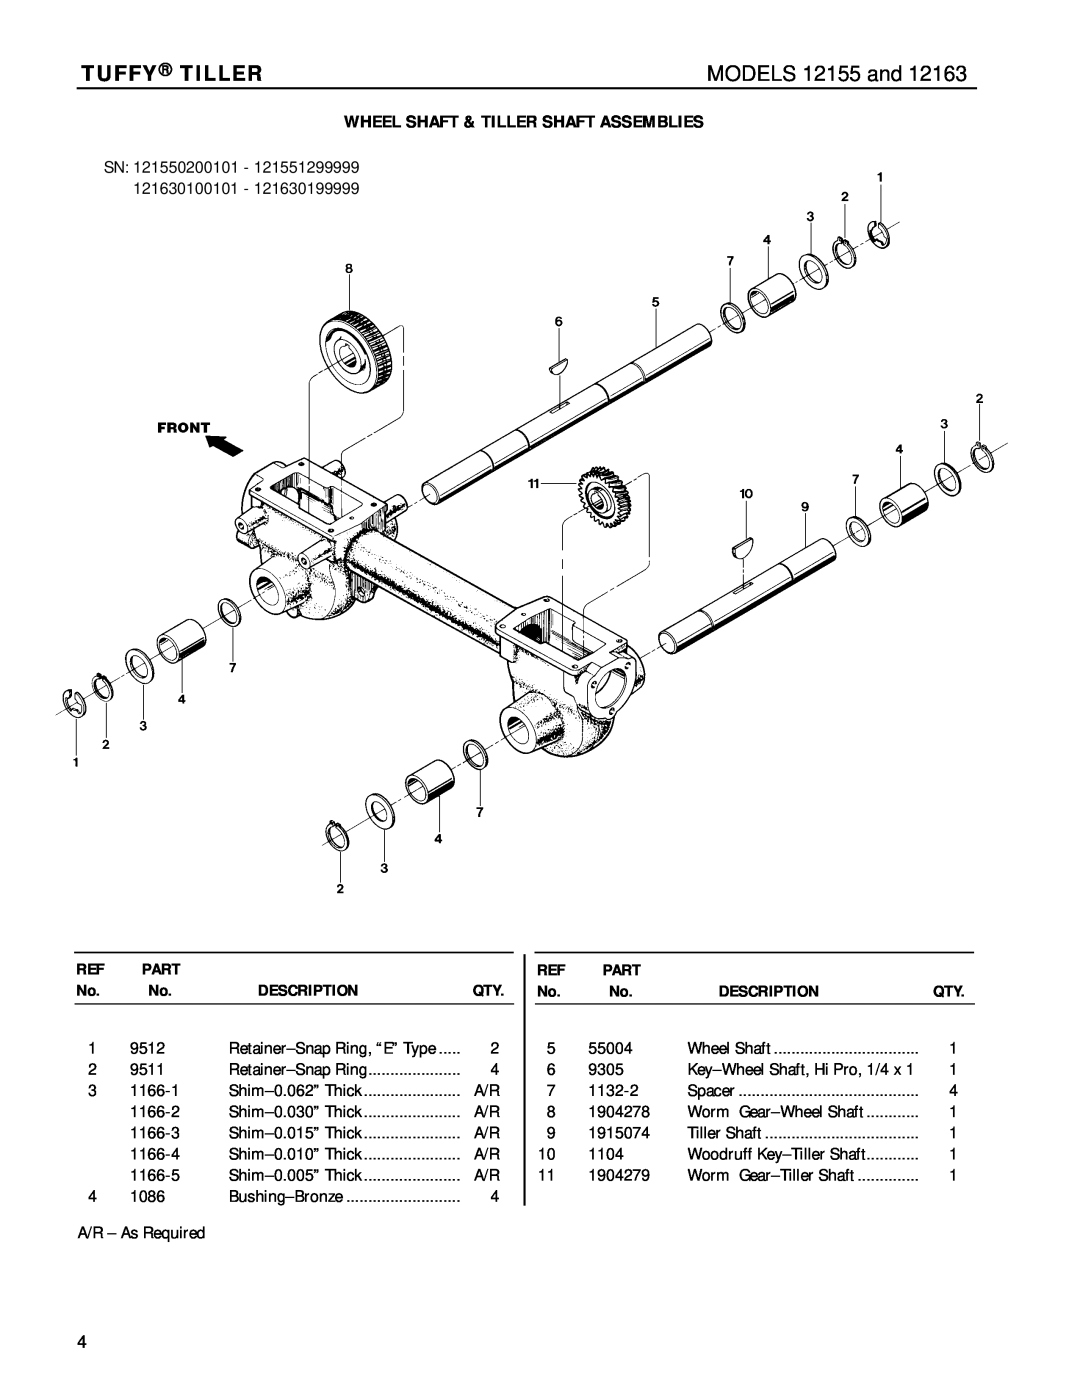 Troy-Bilt 12163 manual Wheel Shaft & Tiller Shaft Assemblies, Tuffy Tiller, MODELS 12155 and, Part, Description 